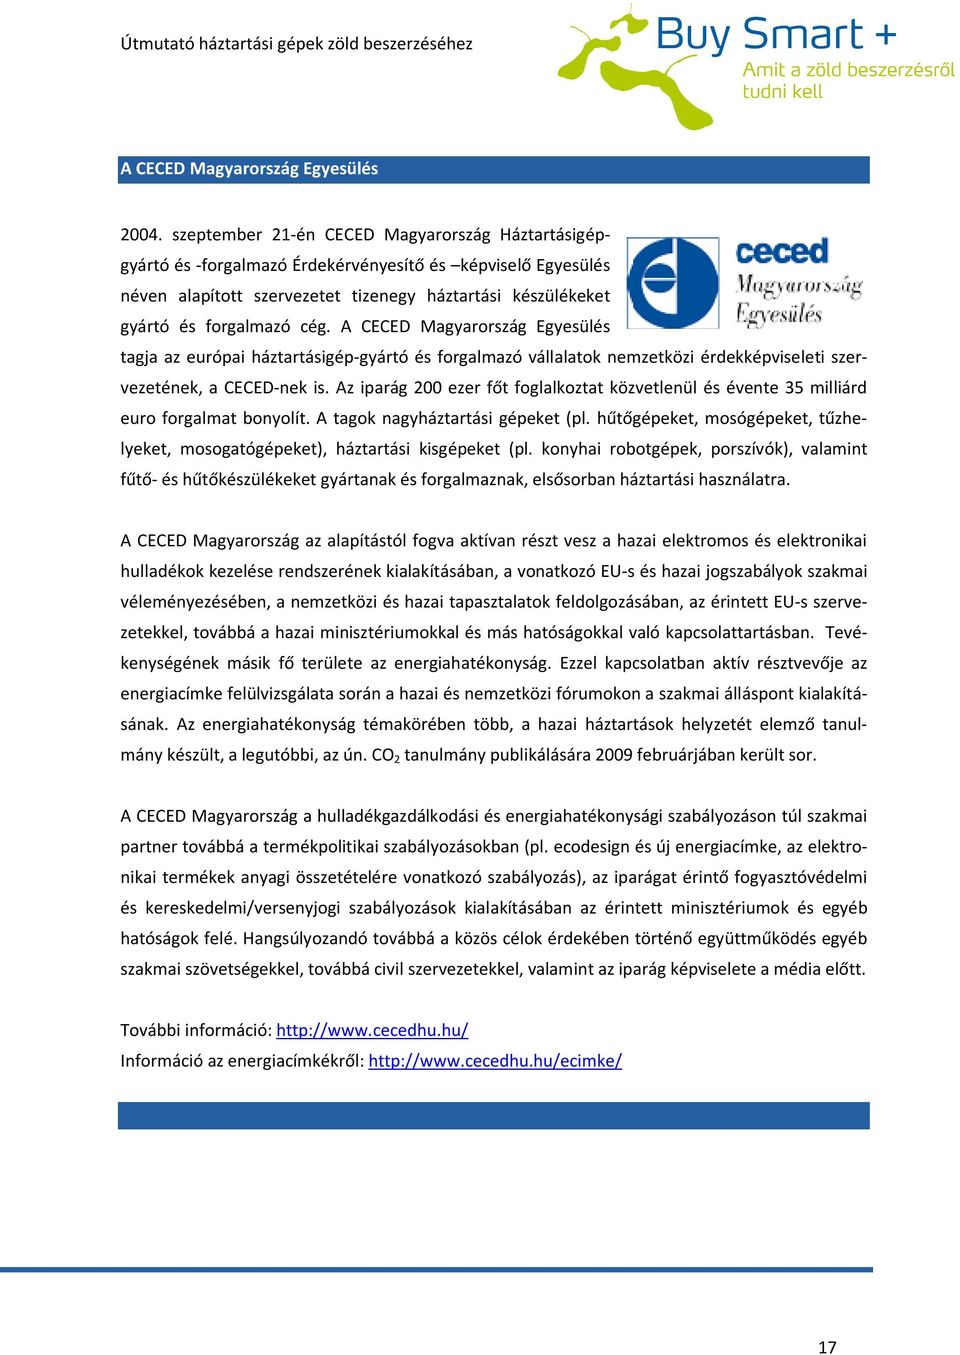 A CECED Magyarország Egyesülés tagja az európai háztartásigép-gyártó és forgalmazó vállalatok nemzetközi érdekképviseleti szervezetének, a CECED-nek is.